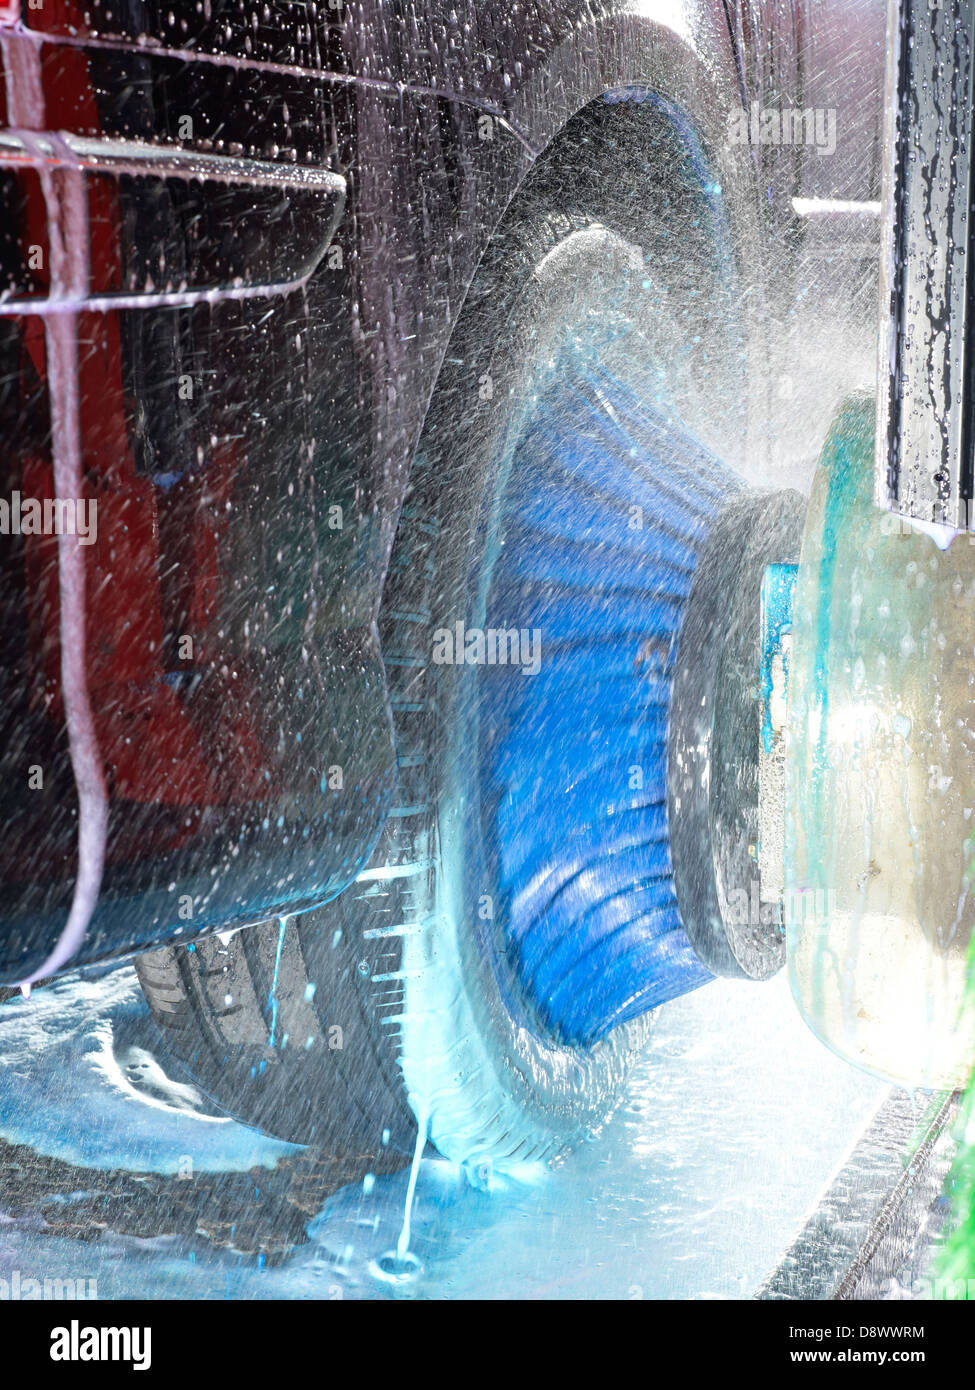 Auto-Waschanlagen Kraftfahrzeug Pinsel reinigen außen Stockfoto